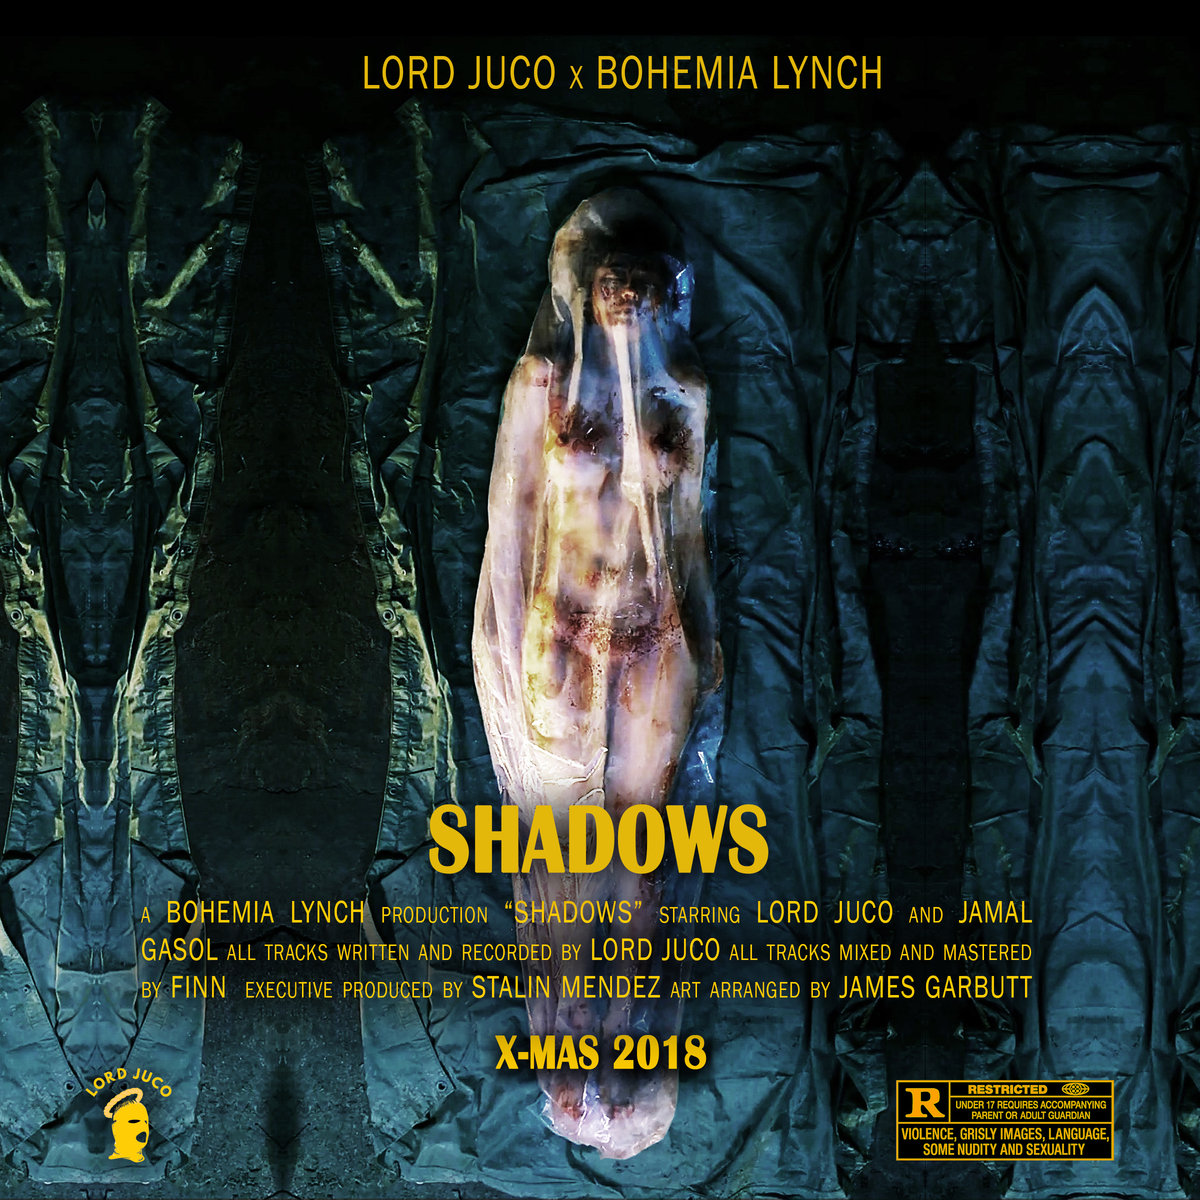 Shadows_lord_juco_bohemia_lynch